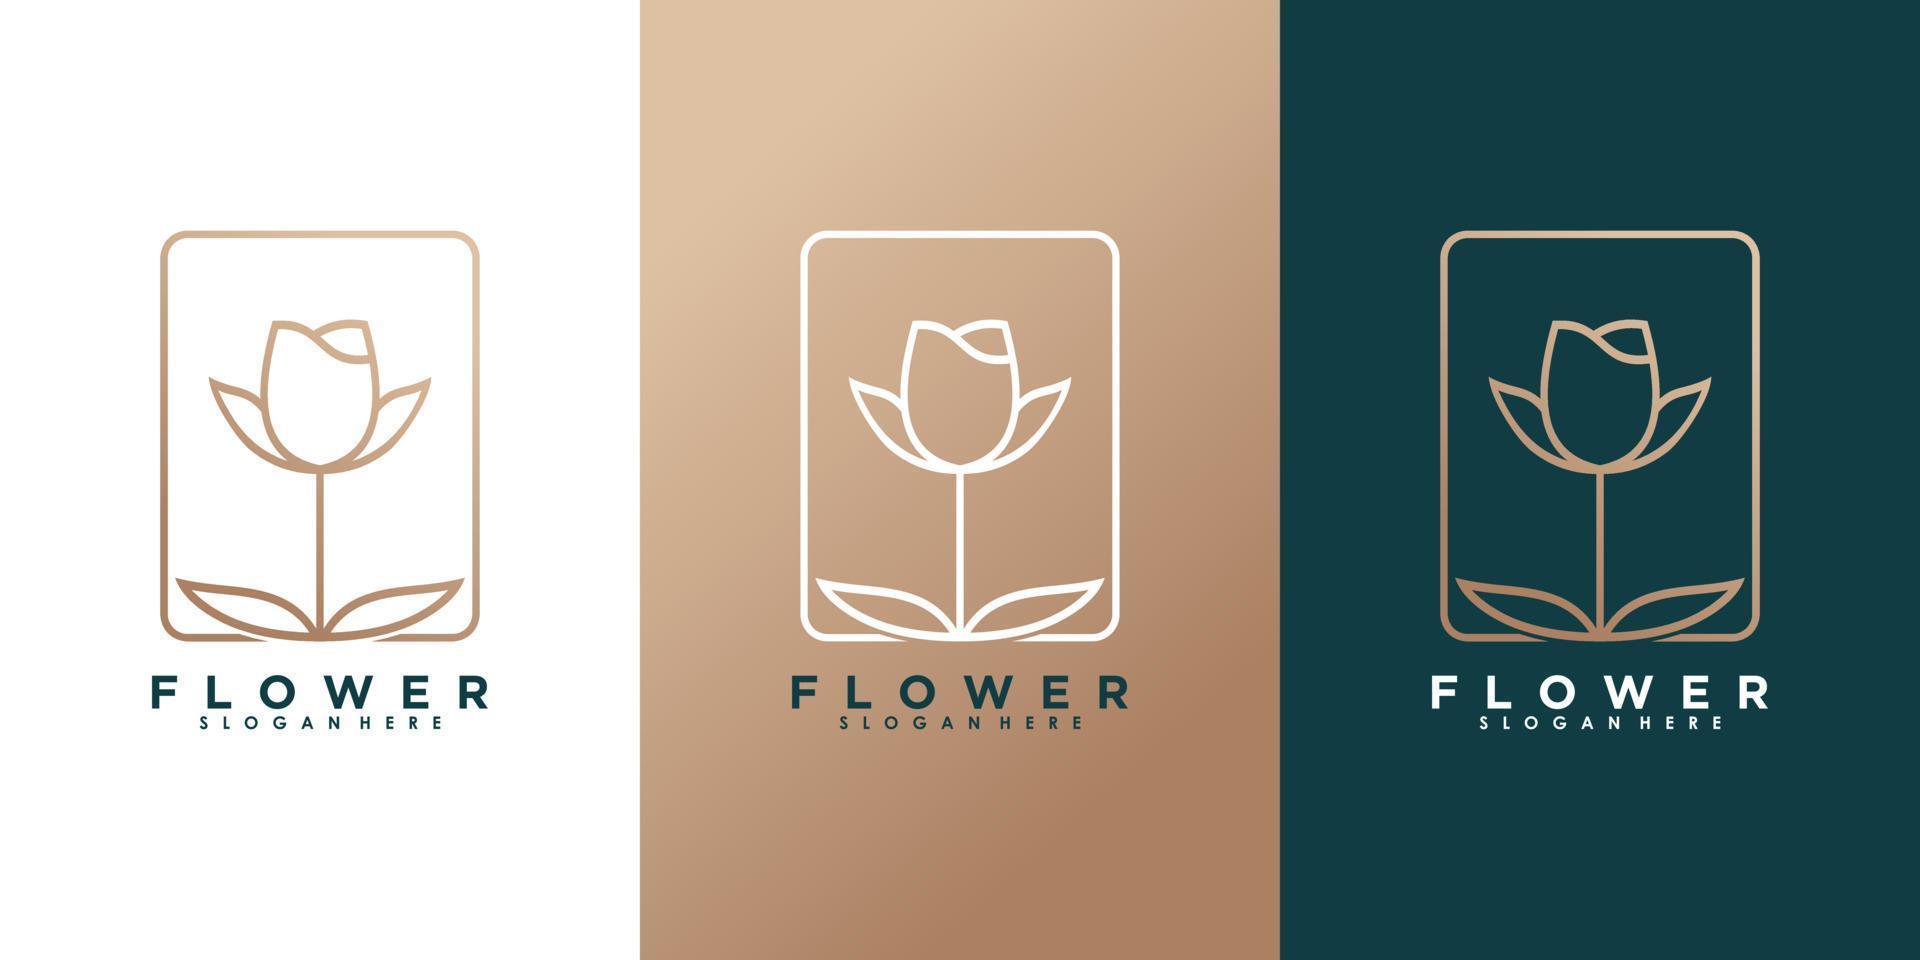 diseño de logotipo de flor de belleza con plantilla vector